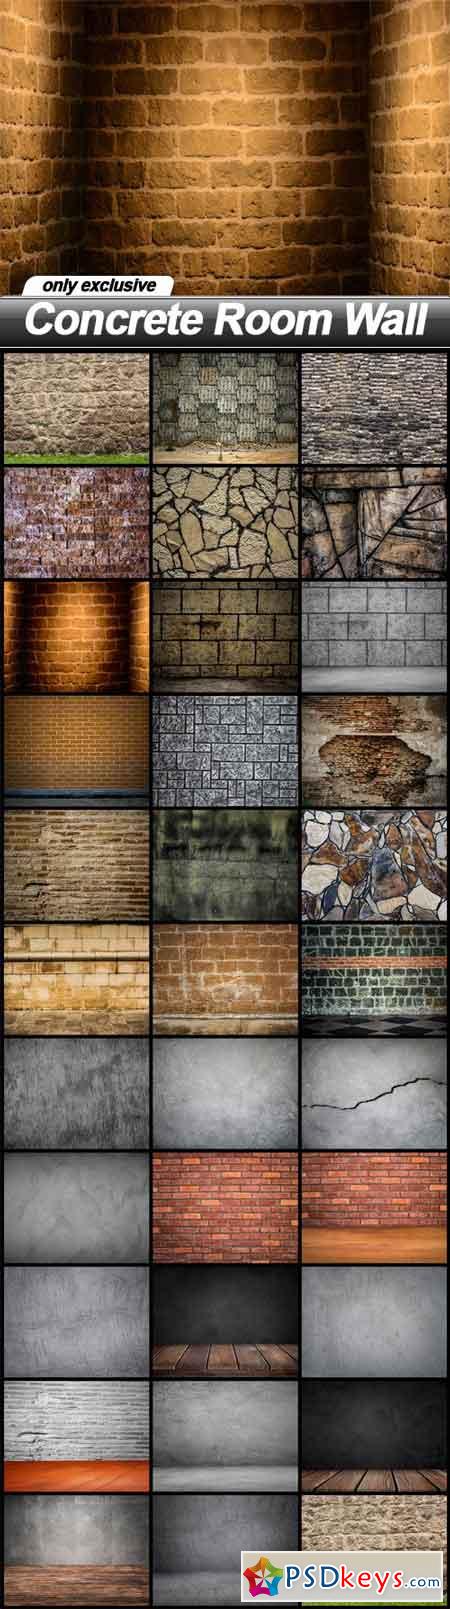 Concrete Room Wall - 32 UHQ JPEG